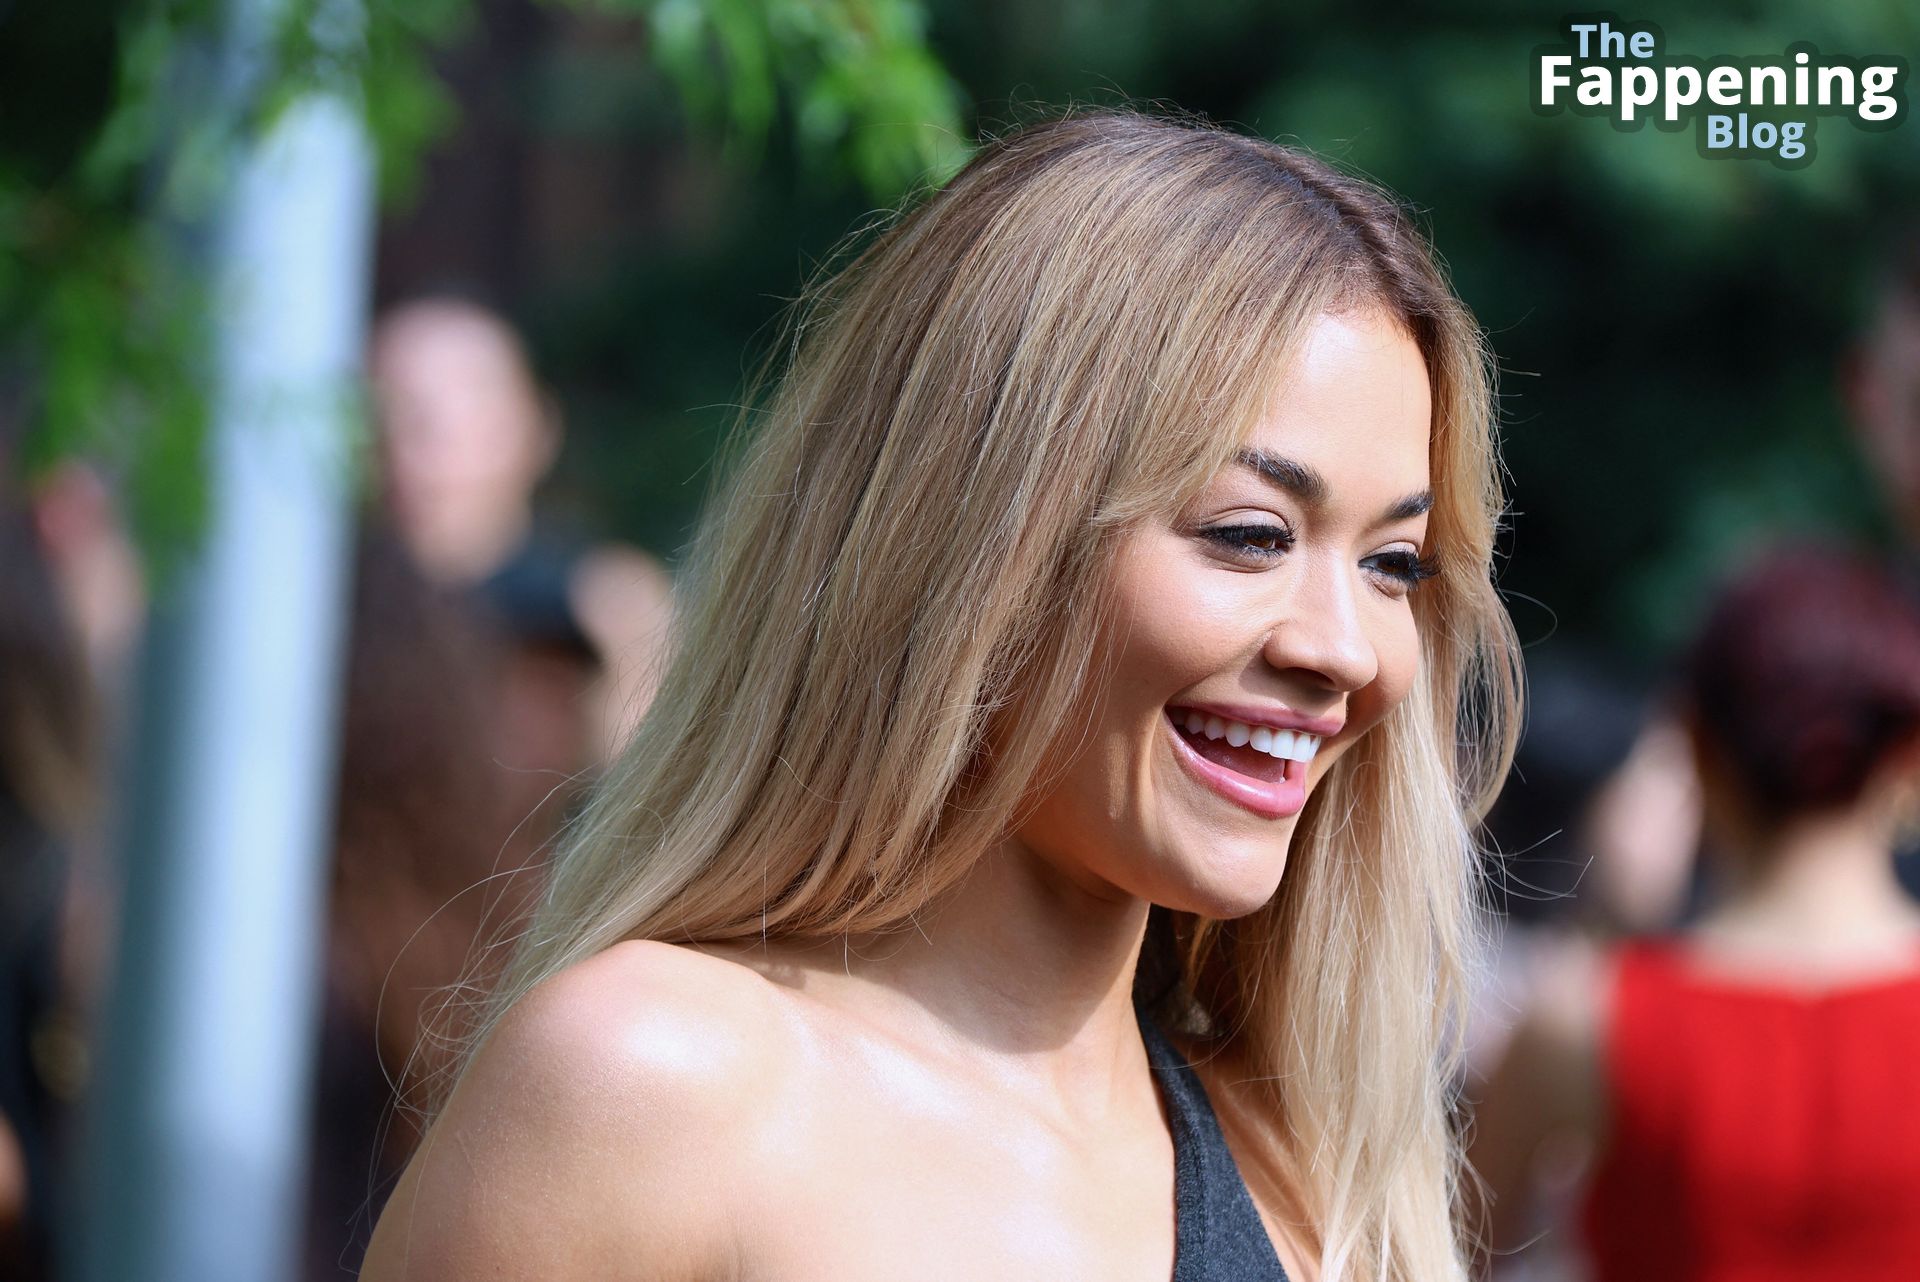 Rita Ora Displays Her Pokies at Michael Kors’ NYFW Show (123 Photos)